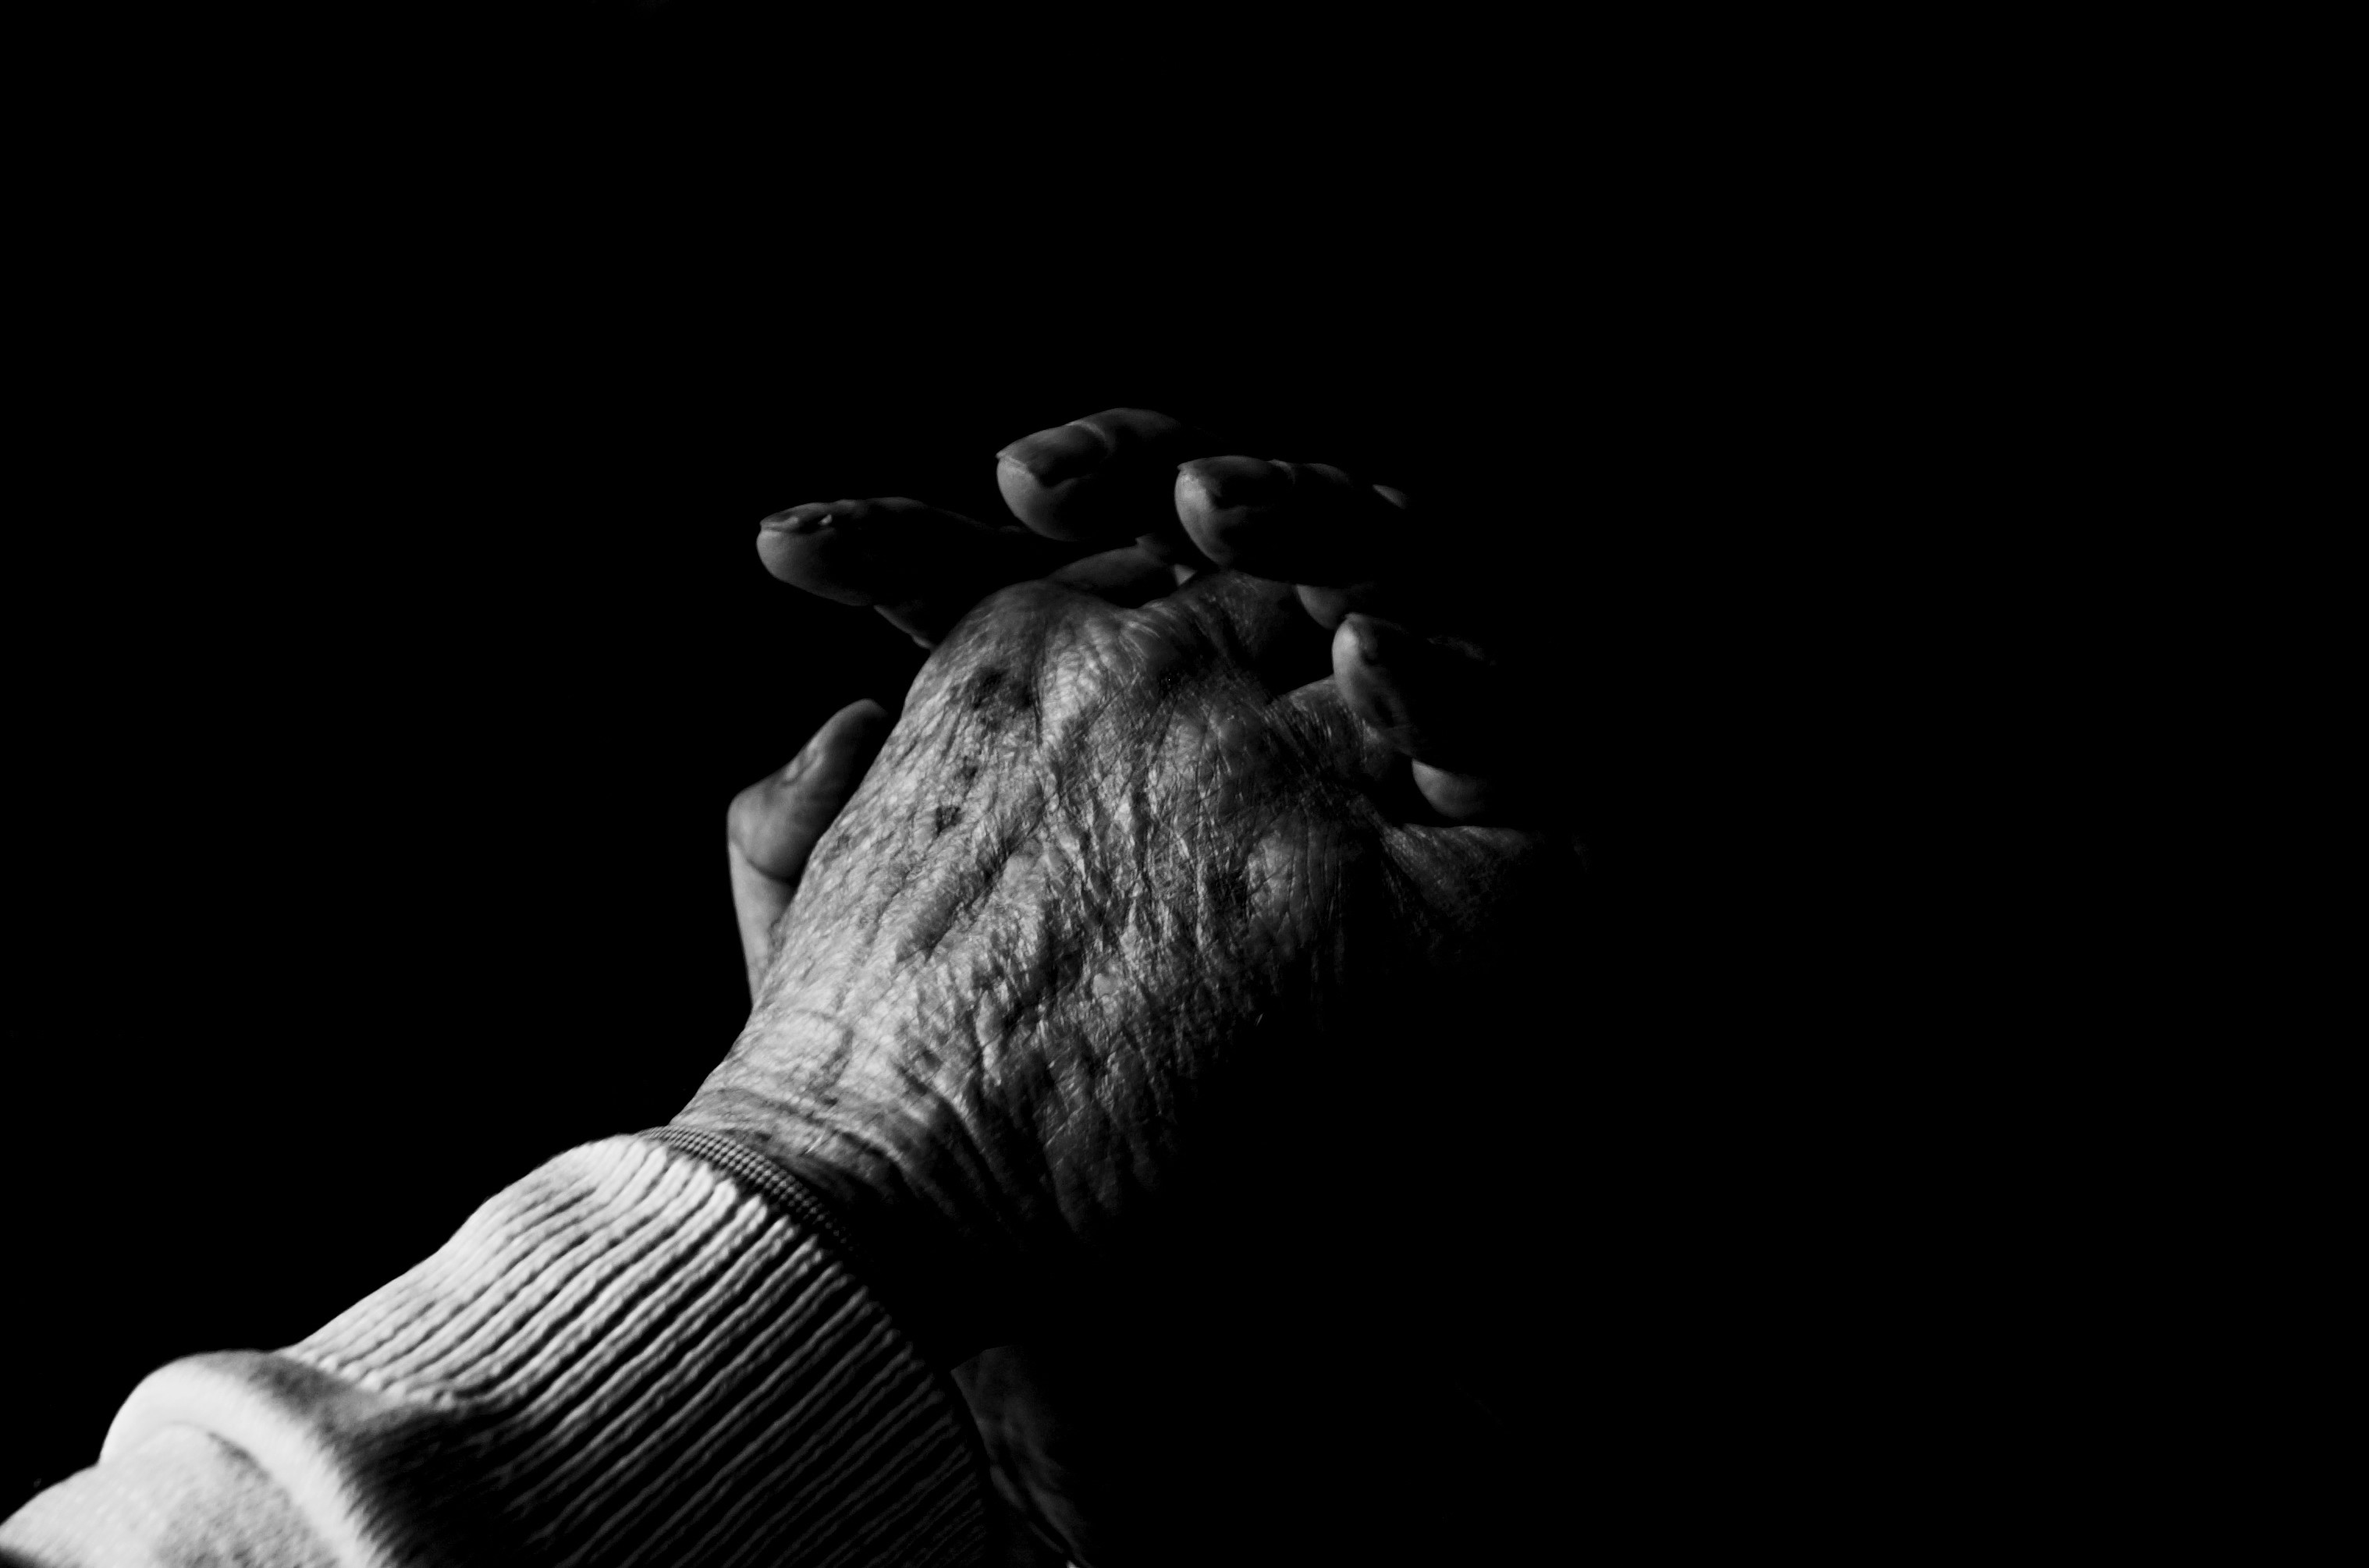 기도 손 벽지,검정,검정색과 흰색,어둠,손,사진술